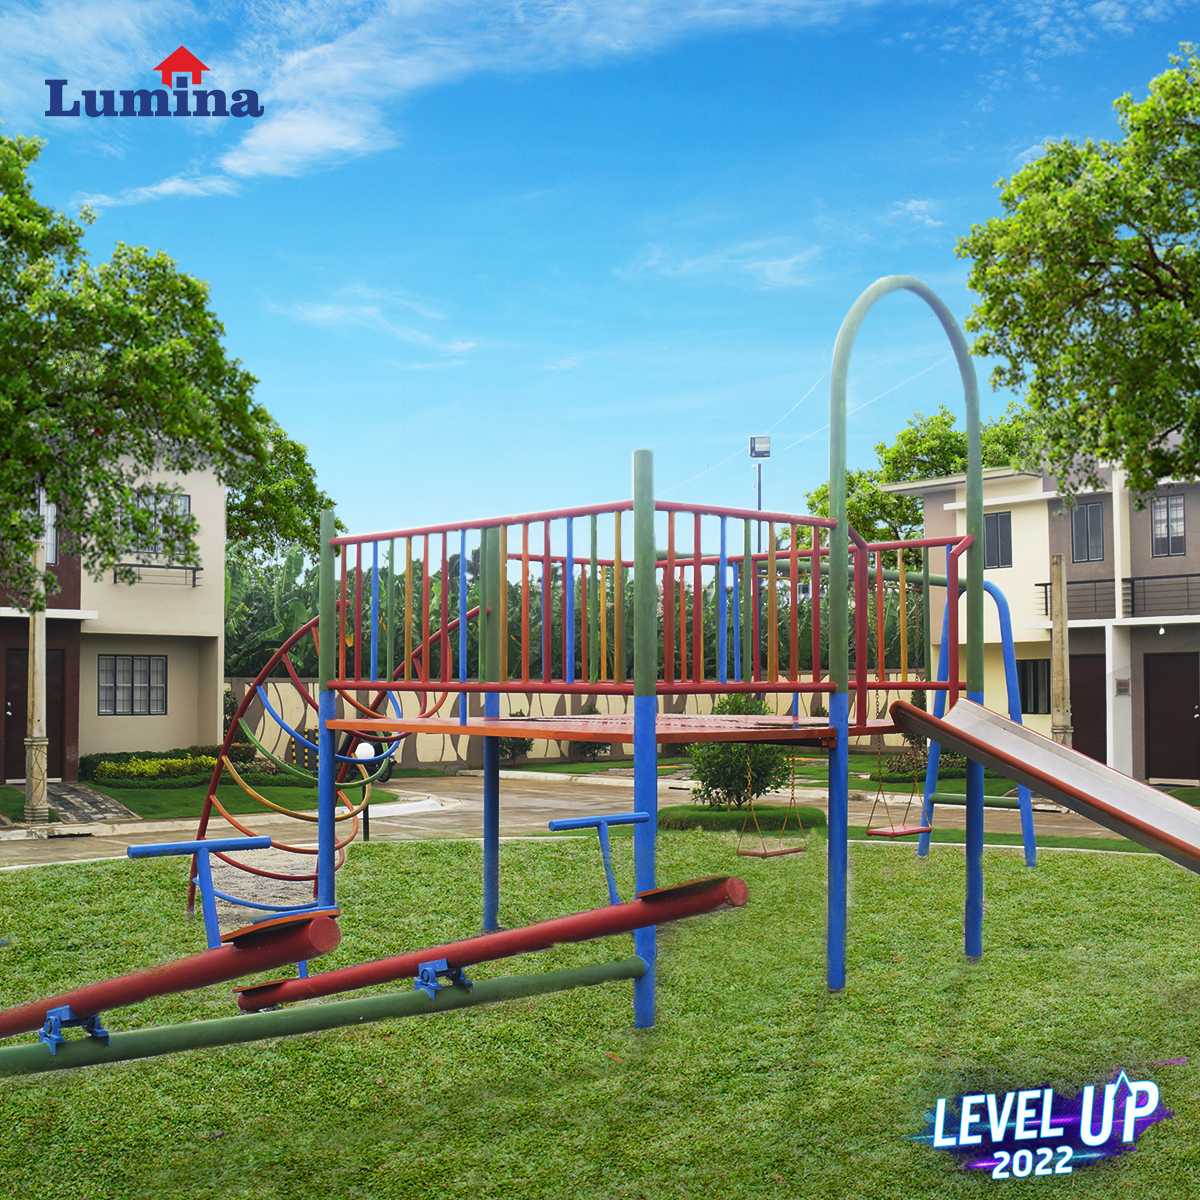 Lumina-DP-frame-February-playground-1652162712.jpg